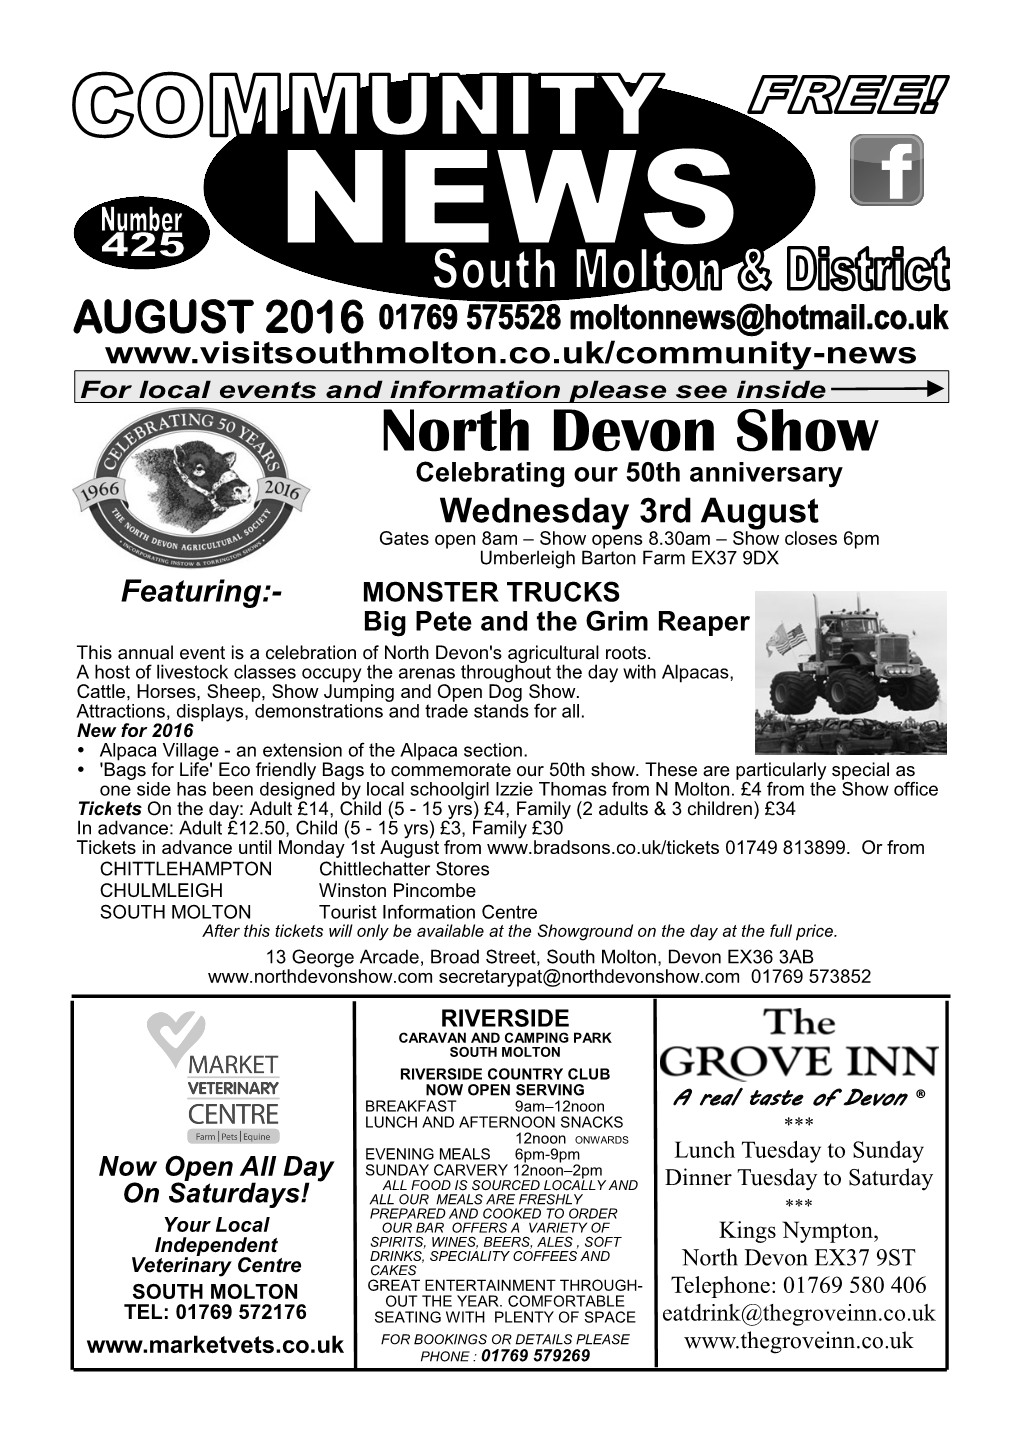 North Devon Show Celebrating Our 50Th Anniversary